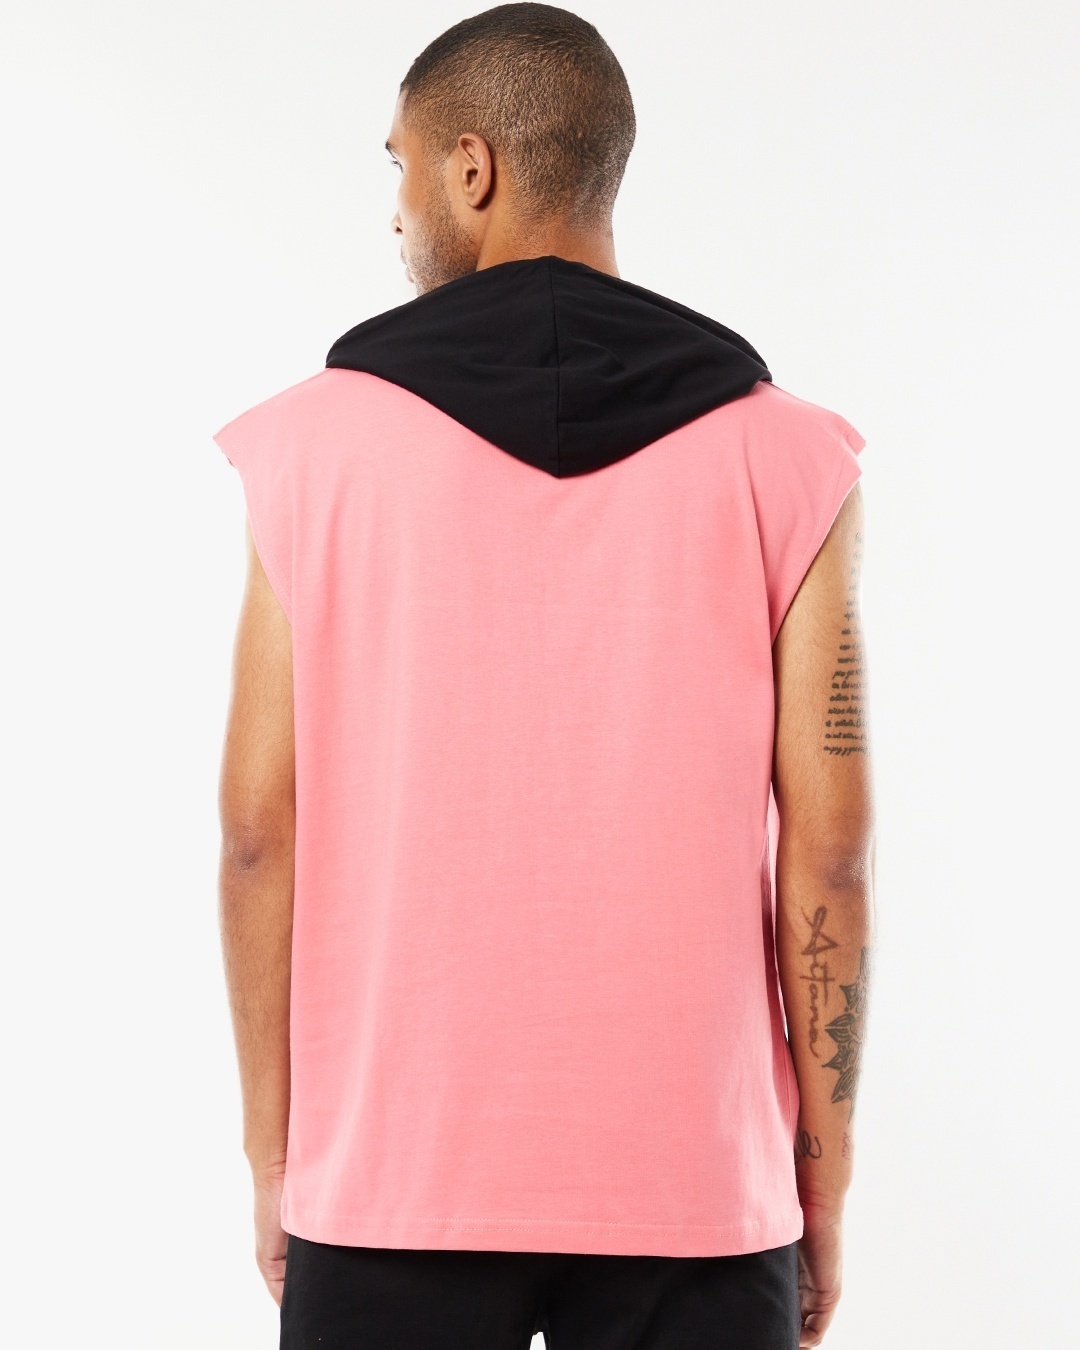 Shop Men's Pink Ready Pocket Printed Oversized Fit Vest Hoodie-Design